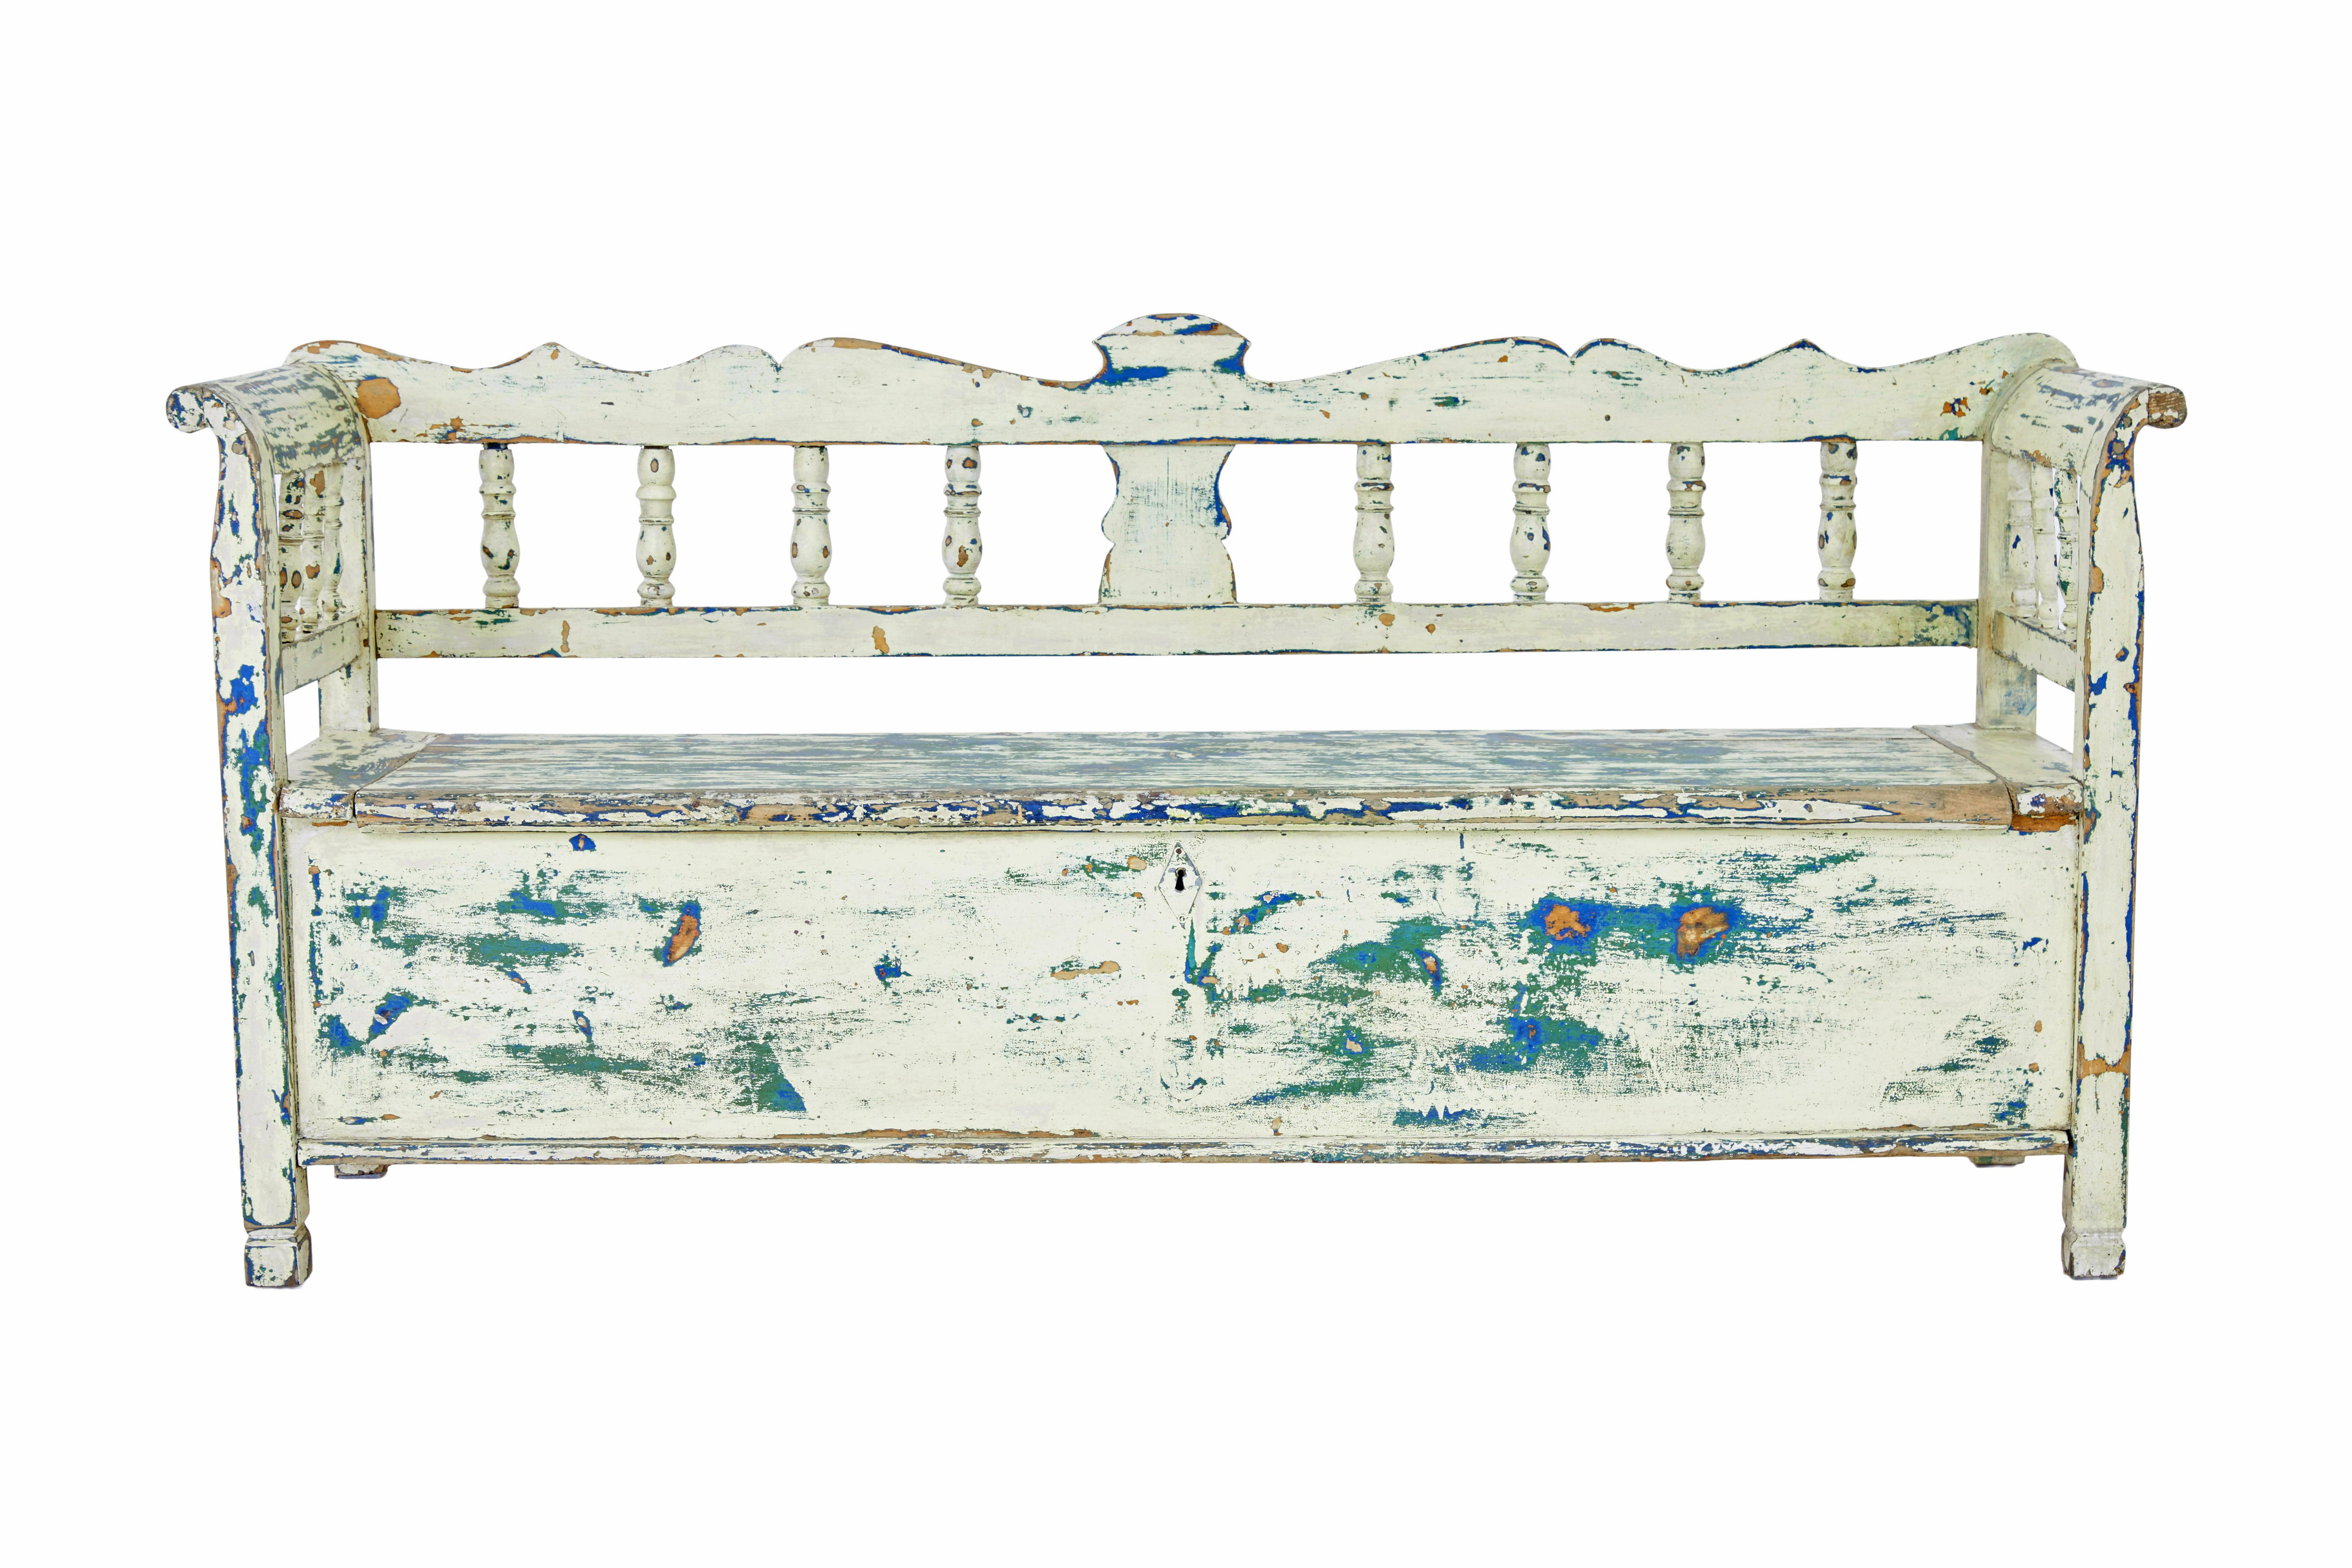 Große schwedische Bank aus bemalter Kiefer, 19. Jahrhundert, um 1890.

Hier stellen wir eine schwedisch lackierte Bank vor, die durch die verschiedenen Schichten der lebenslangen Farbe trocken geschabt wurde.

Geformte Rückenlehne mit halbierten